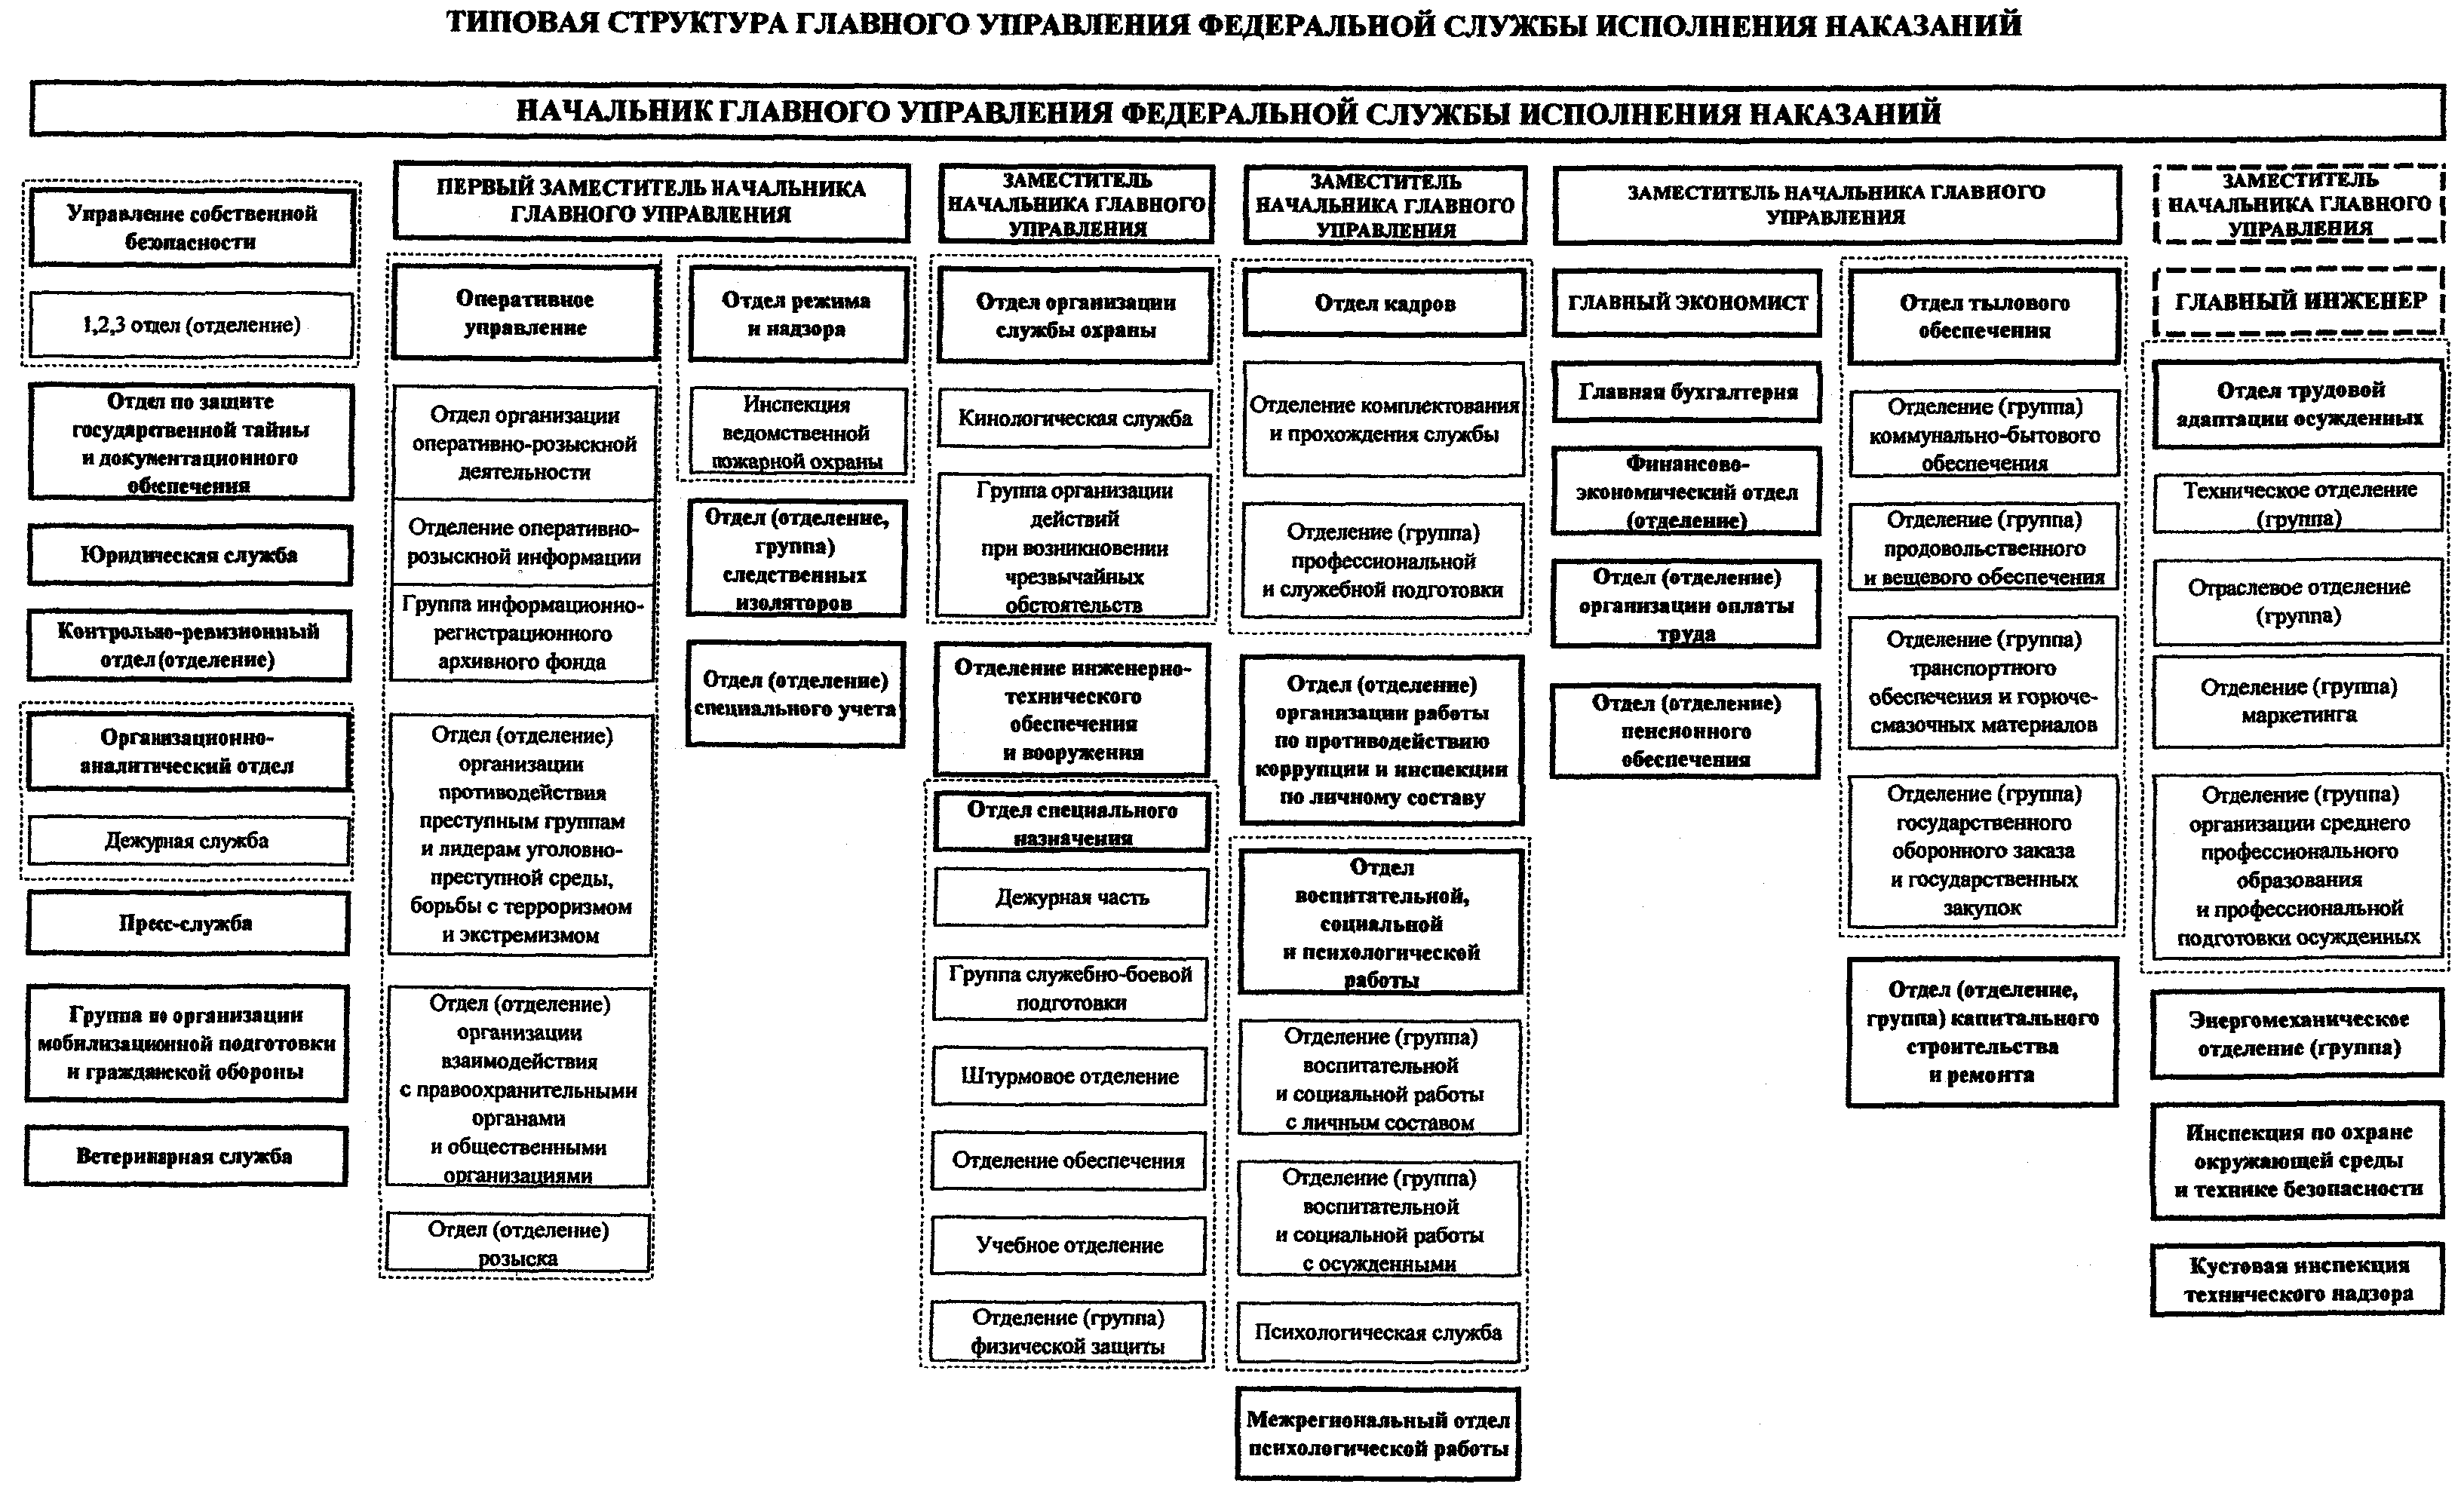 Структура федеральной службы рф